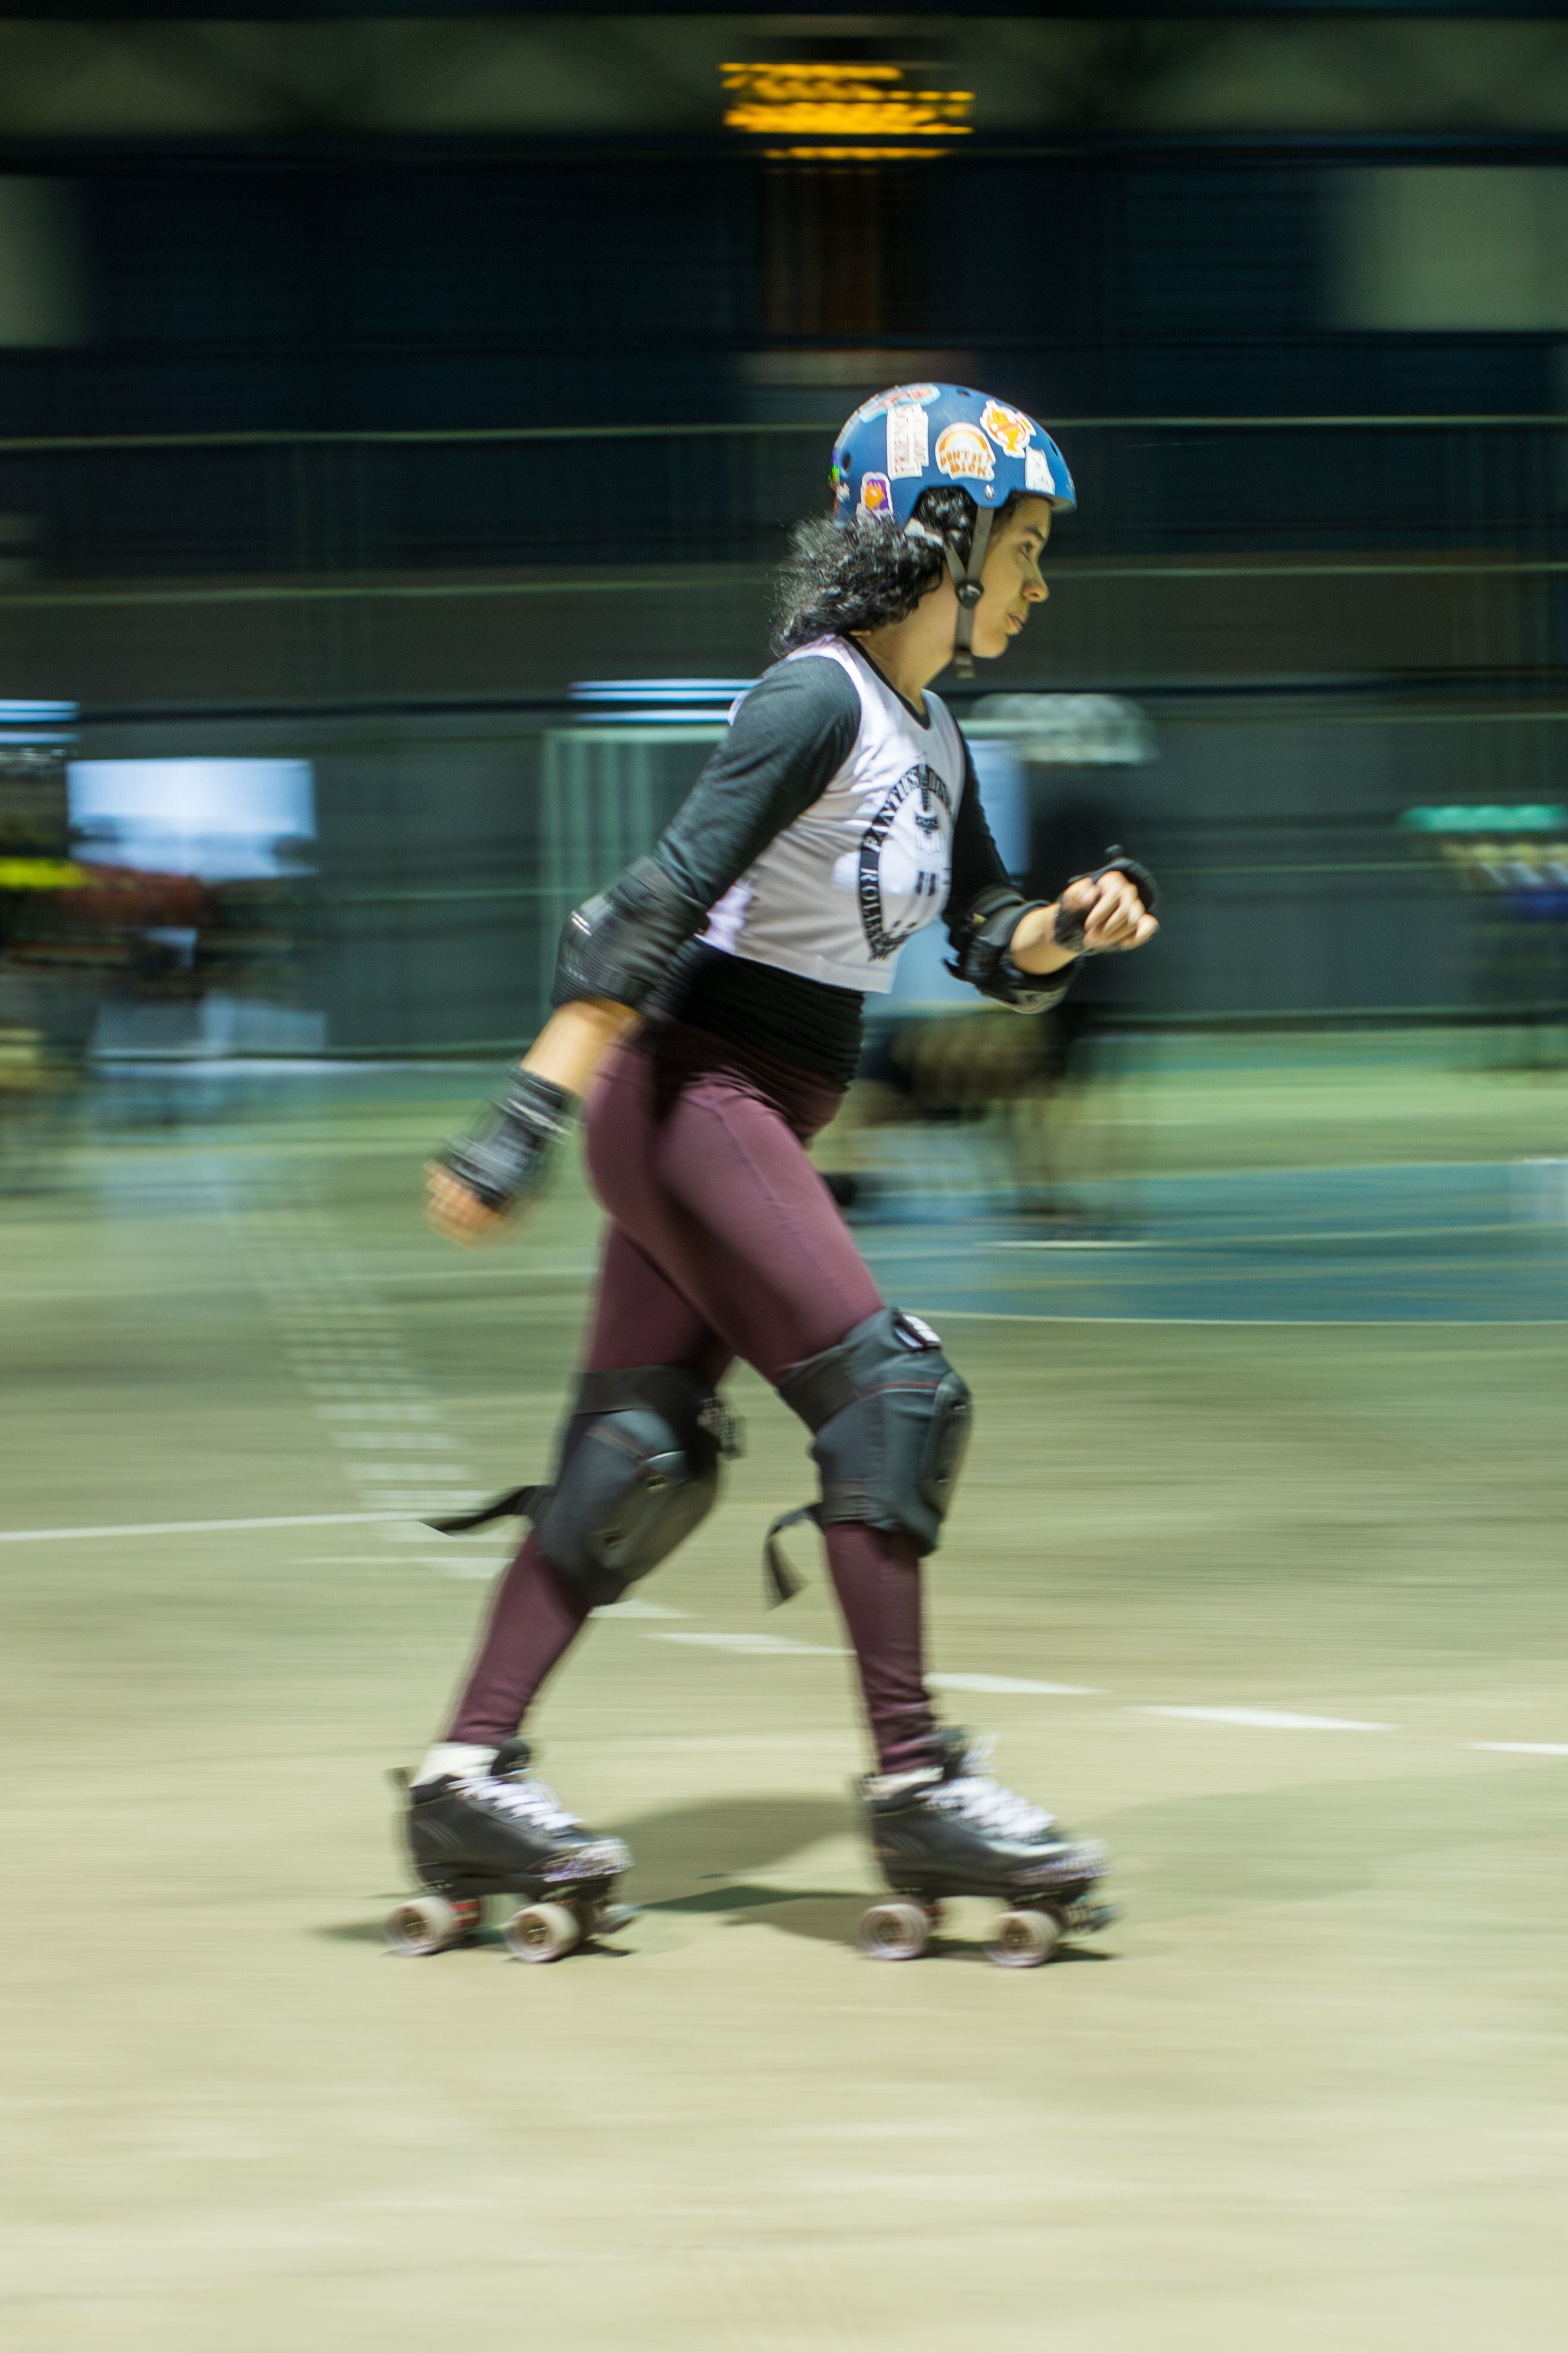 Rebeca Pessoa quería aprender a bailar en patines y por ello ingresó al equipo, sin embargo, el Roller Derby la cautivó.